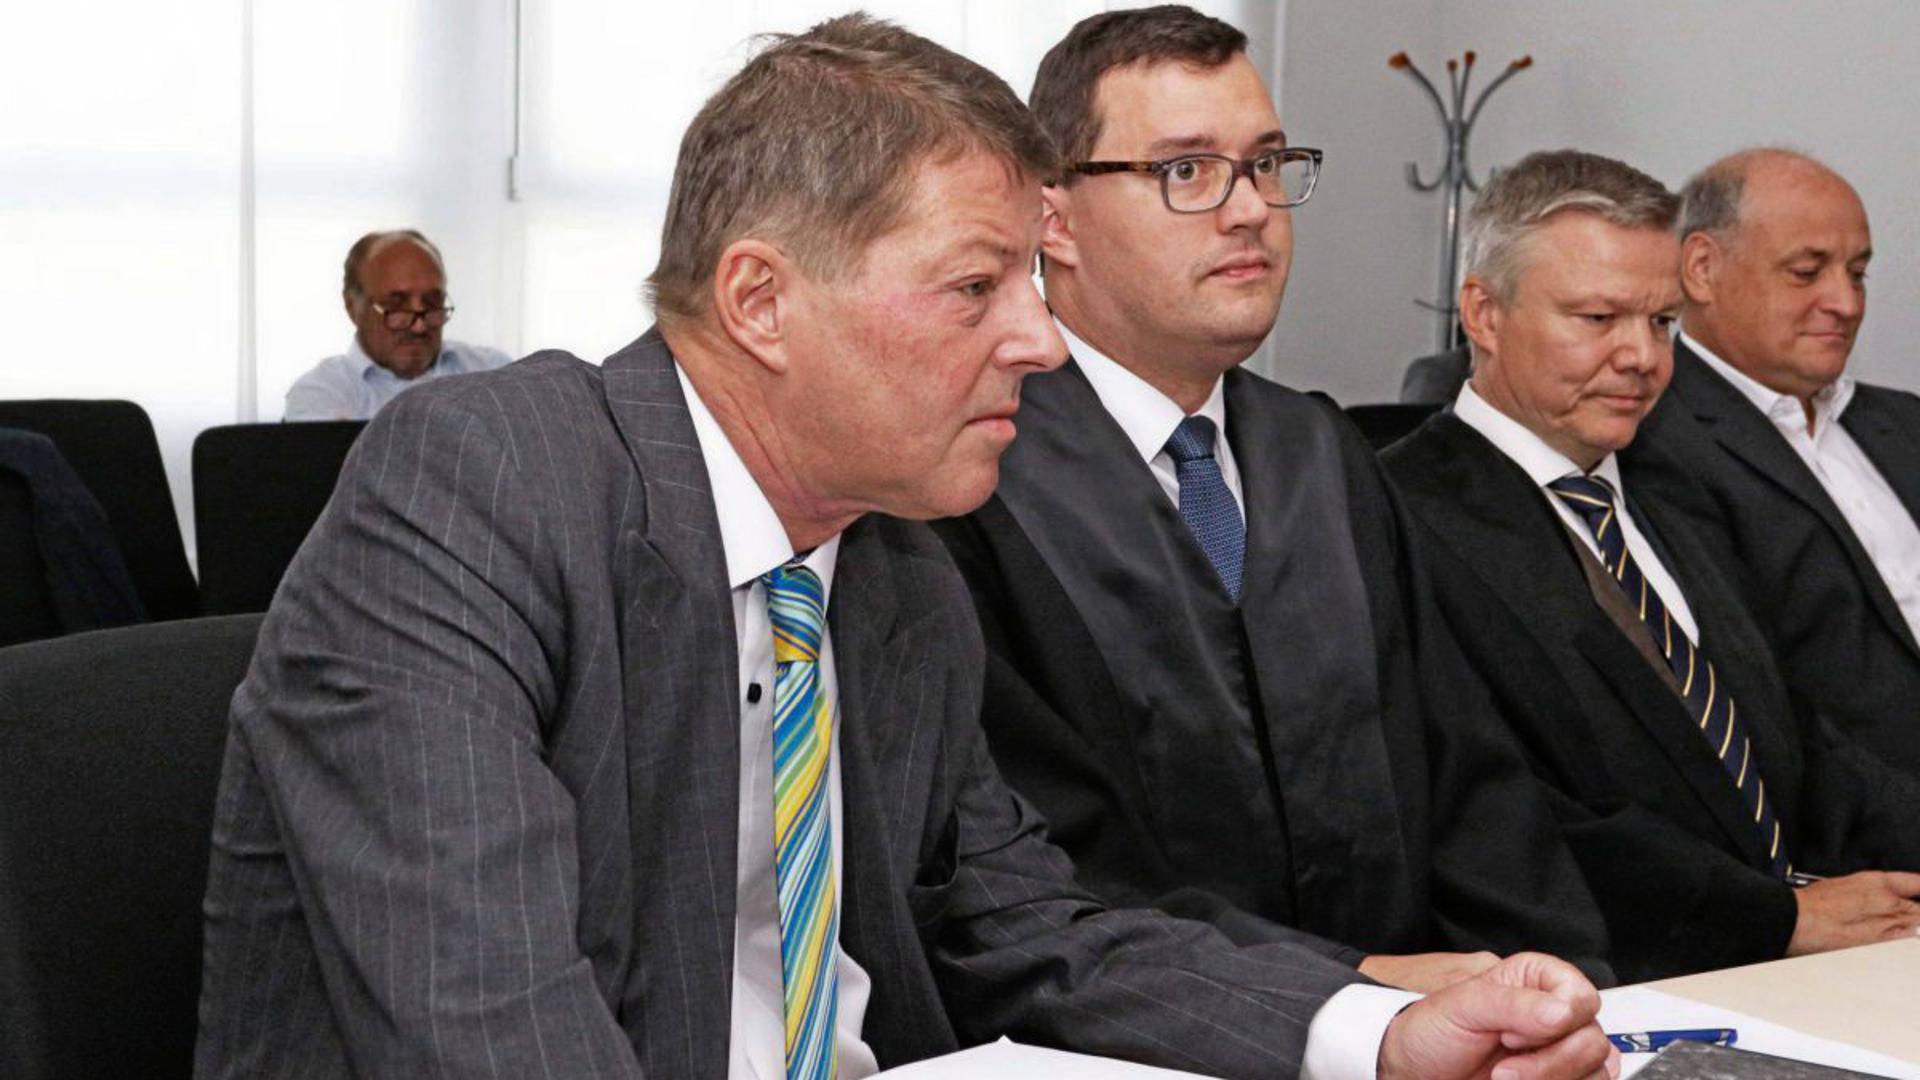 Vor Gericht: Die Ex-Geschäftsführer Roger Heidt (links) und Thomas Engelhard (rechts) klagen gegen die Stadtwerke Pforzheim, die zu 65 Prozent der Stadt gehören. Ein Verkündigungstermin wurde nun auf den 28. November verschoben.